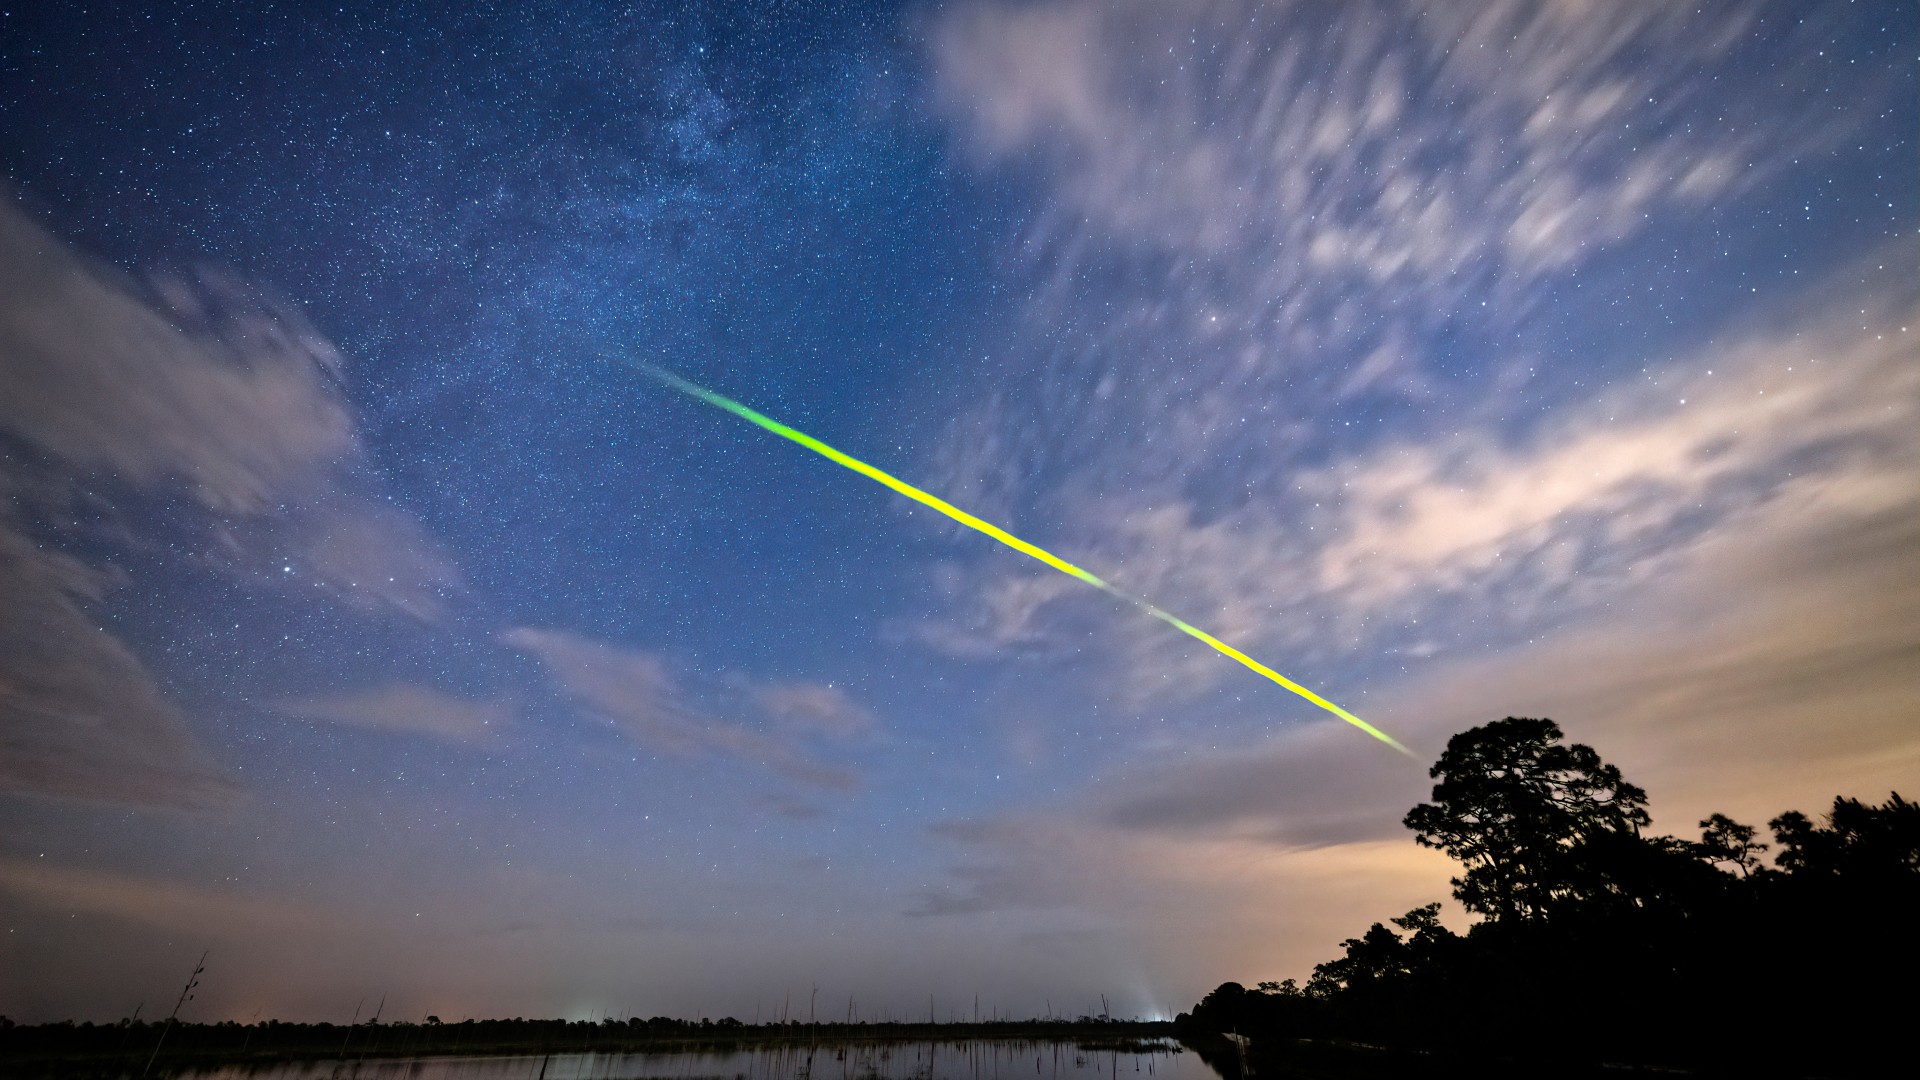 Eta Aquarid meteor shower peak could spawn over 100 ‘shooting stars’ per hour this weekend Space